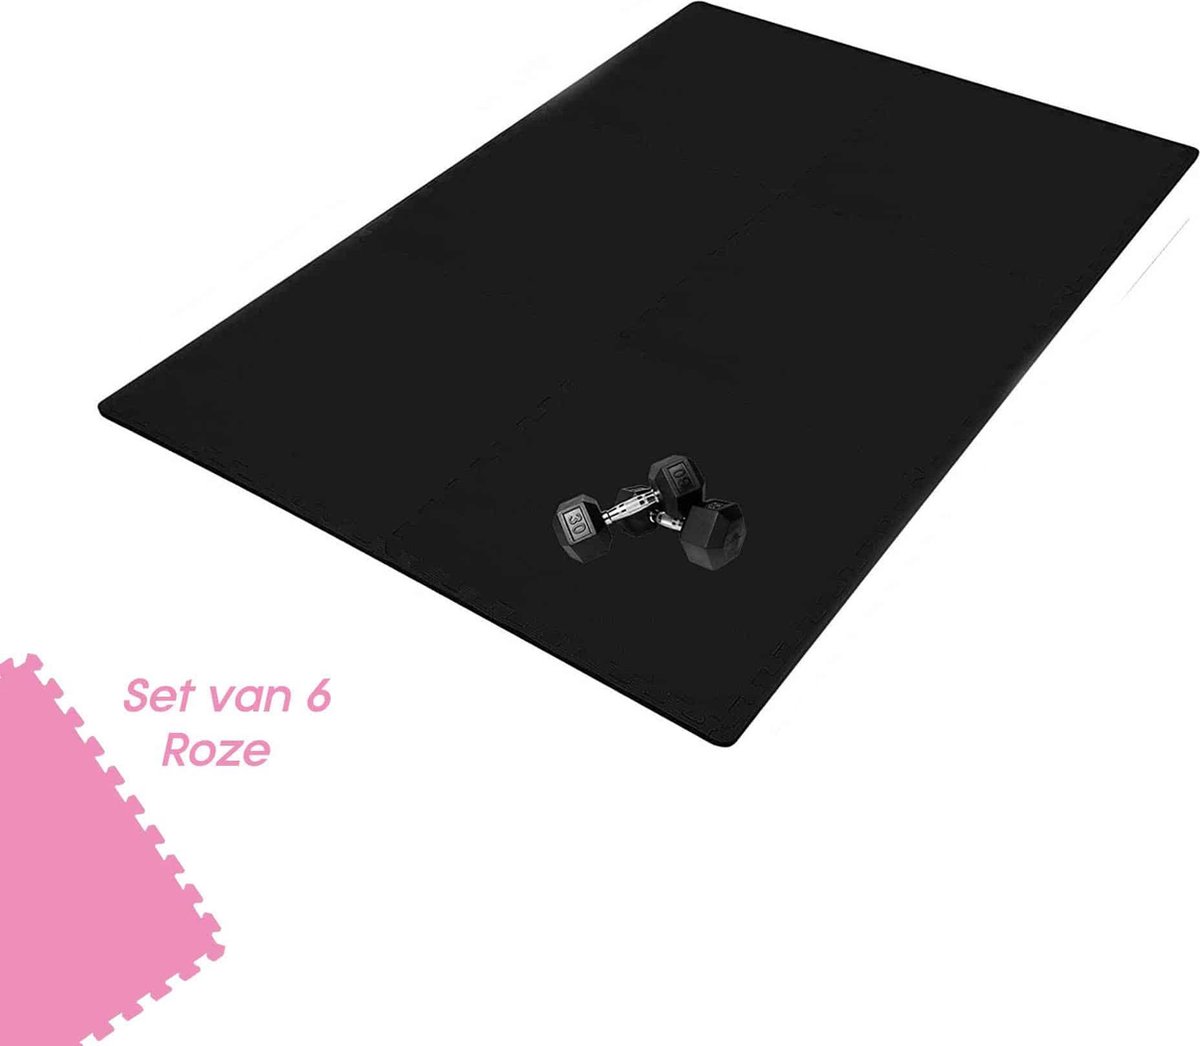 Buxibo Yogamat 60x60x1CM - Set van 6 - Anti Slip - Isoleert Geluid & Waterdicht - Fitness/Yoga/Sport/Vloer/Zwembad Foam Mat - Voor Kind en Volwassenen - Roze